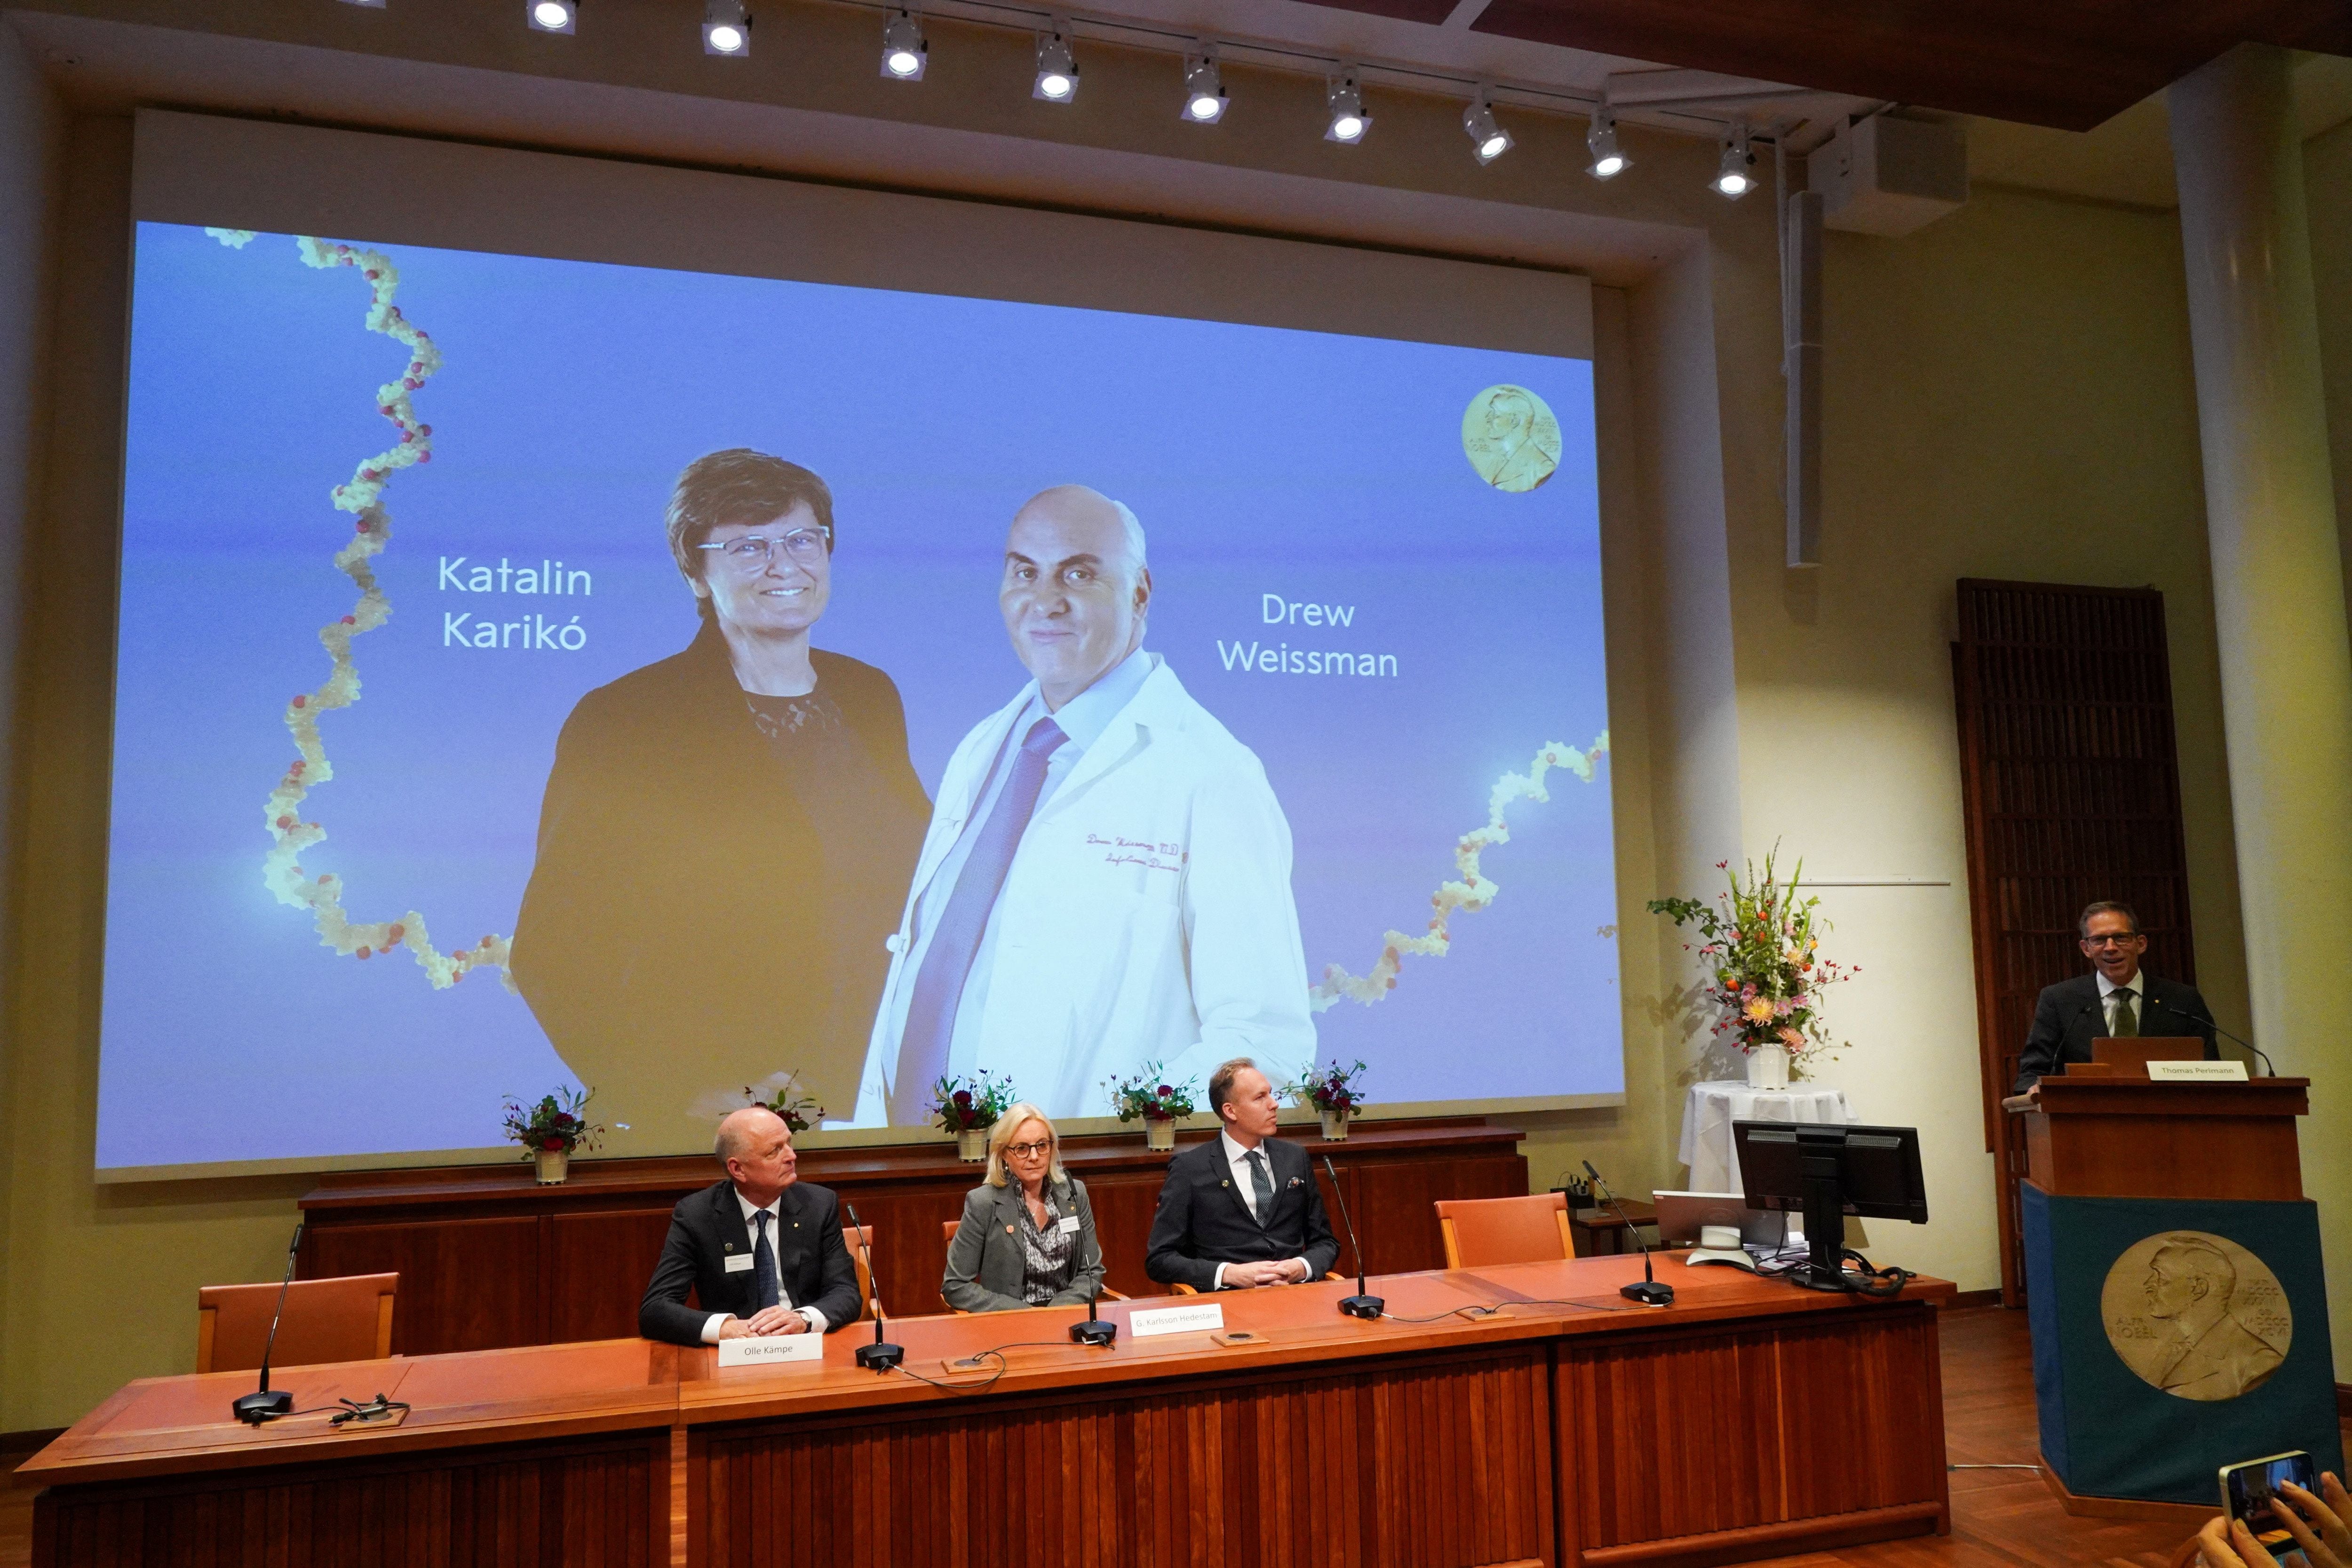 El jurado de la Academia Nobel, anuncia el premio de Medicina para Katalín Karikó y Drew Weissman.